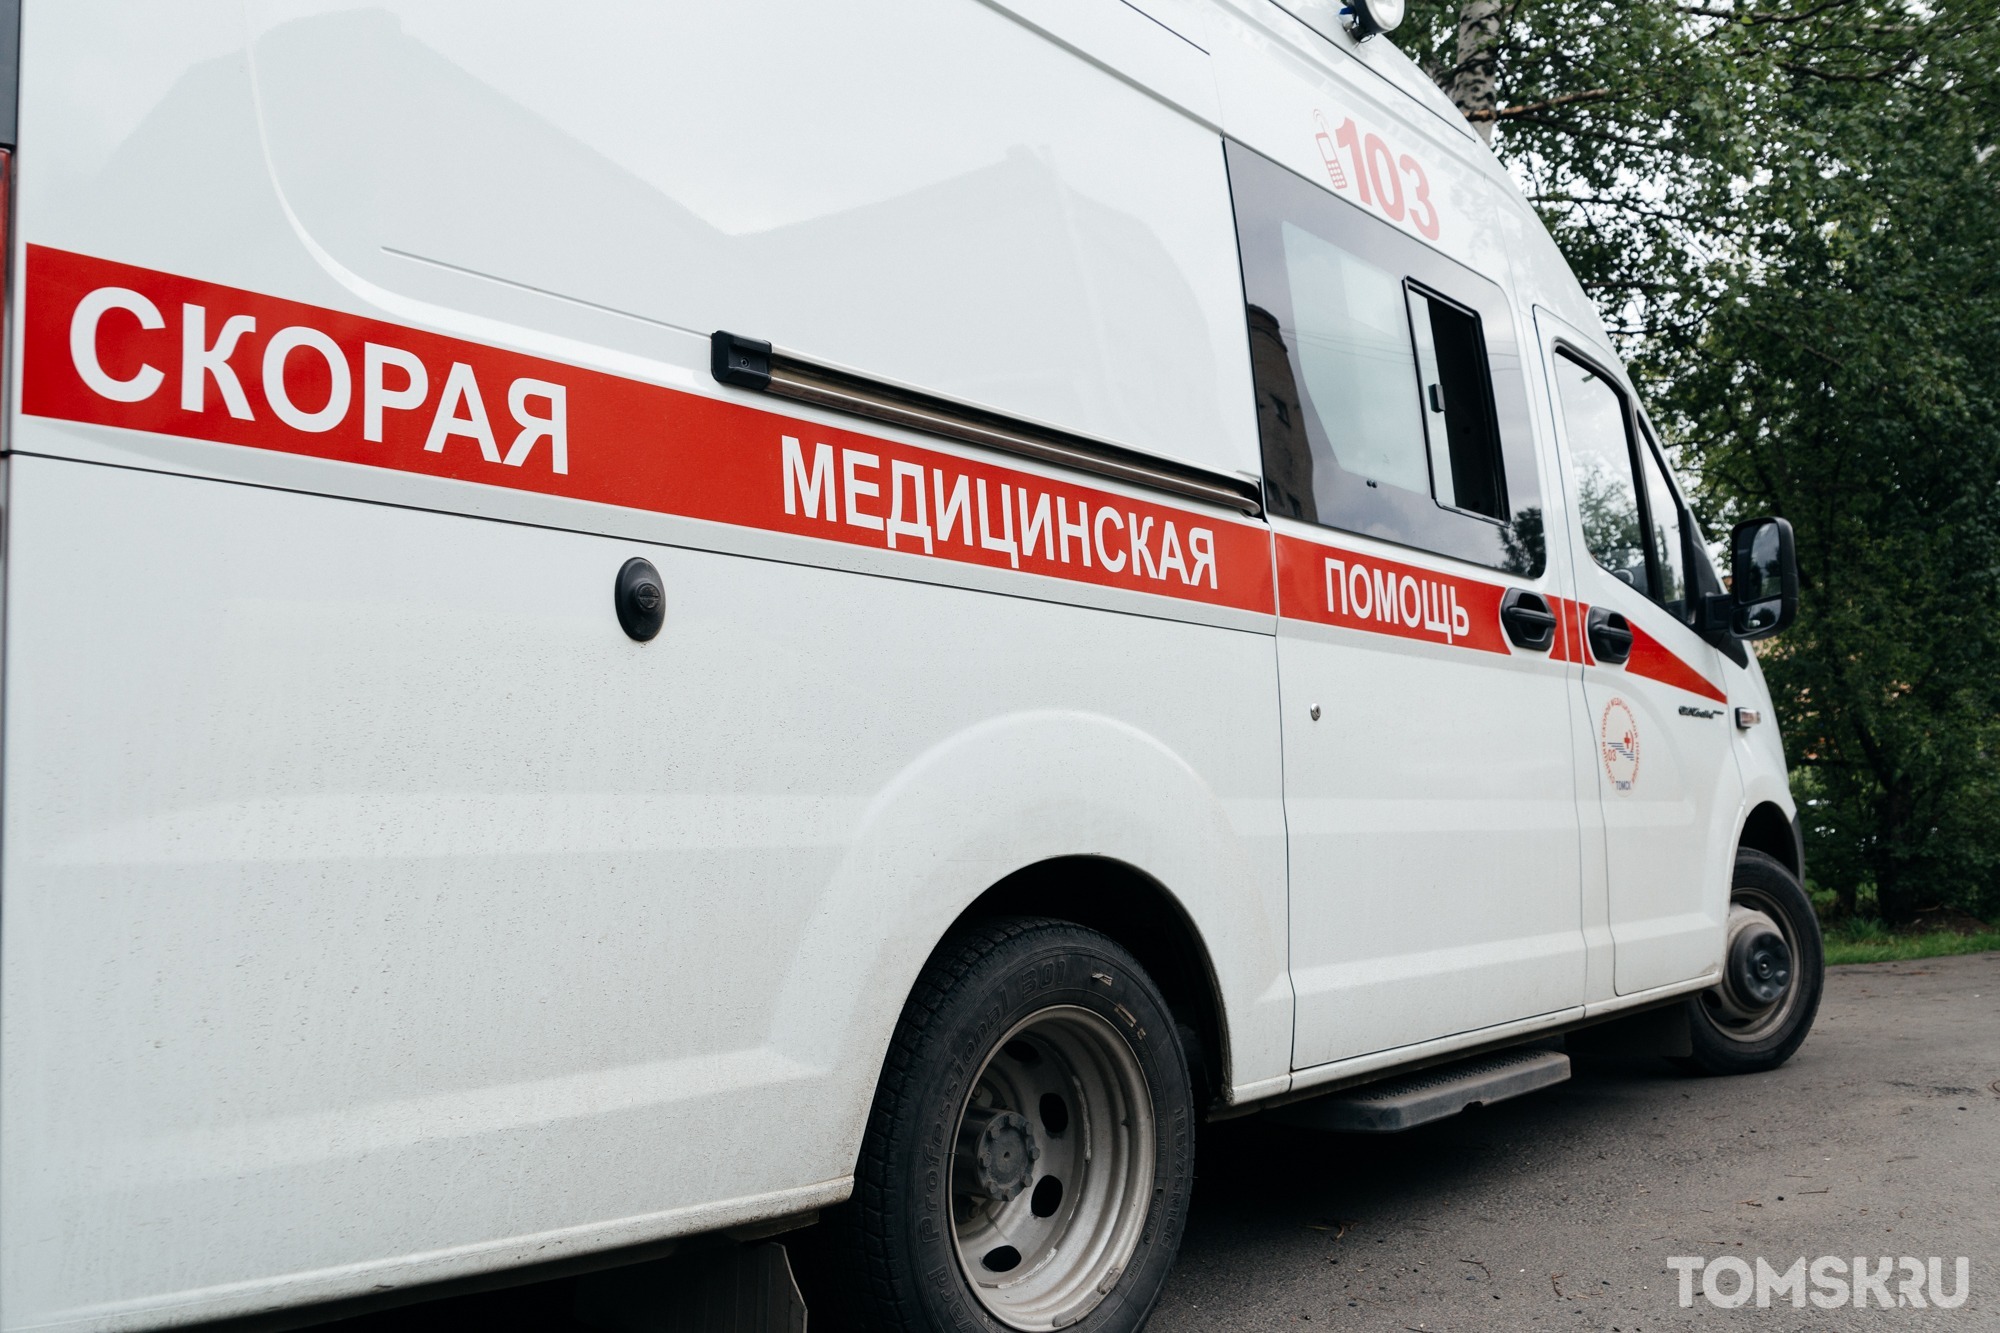 Три женщины-водителя пострадали на трассе под Томском 